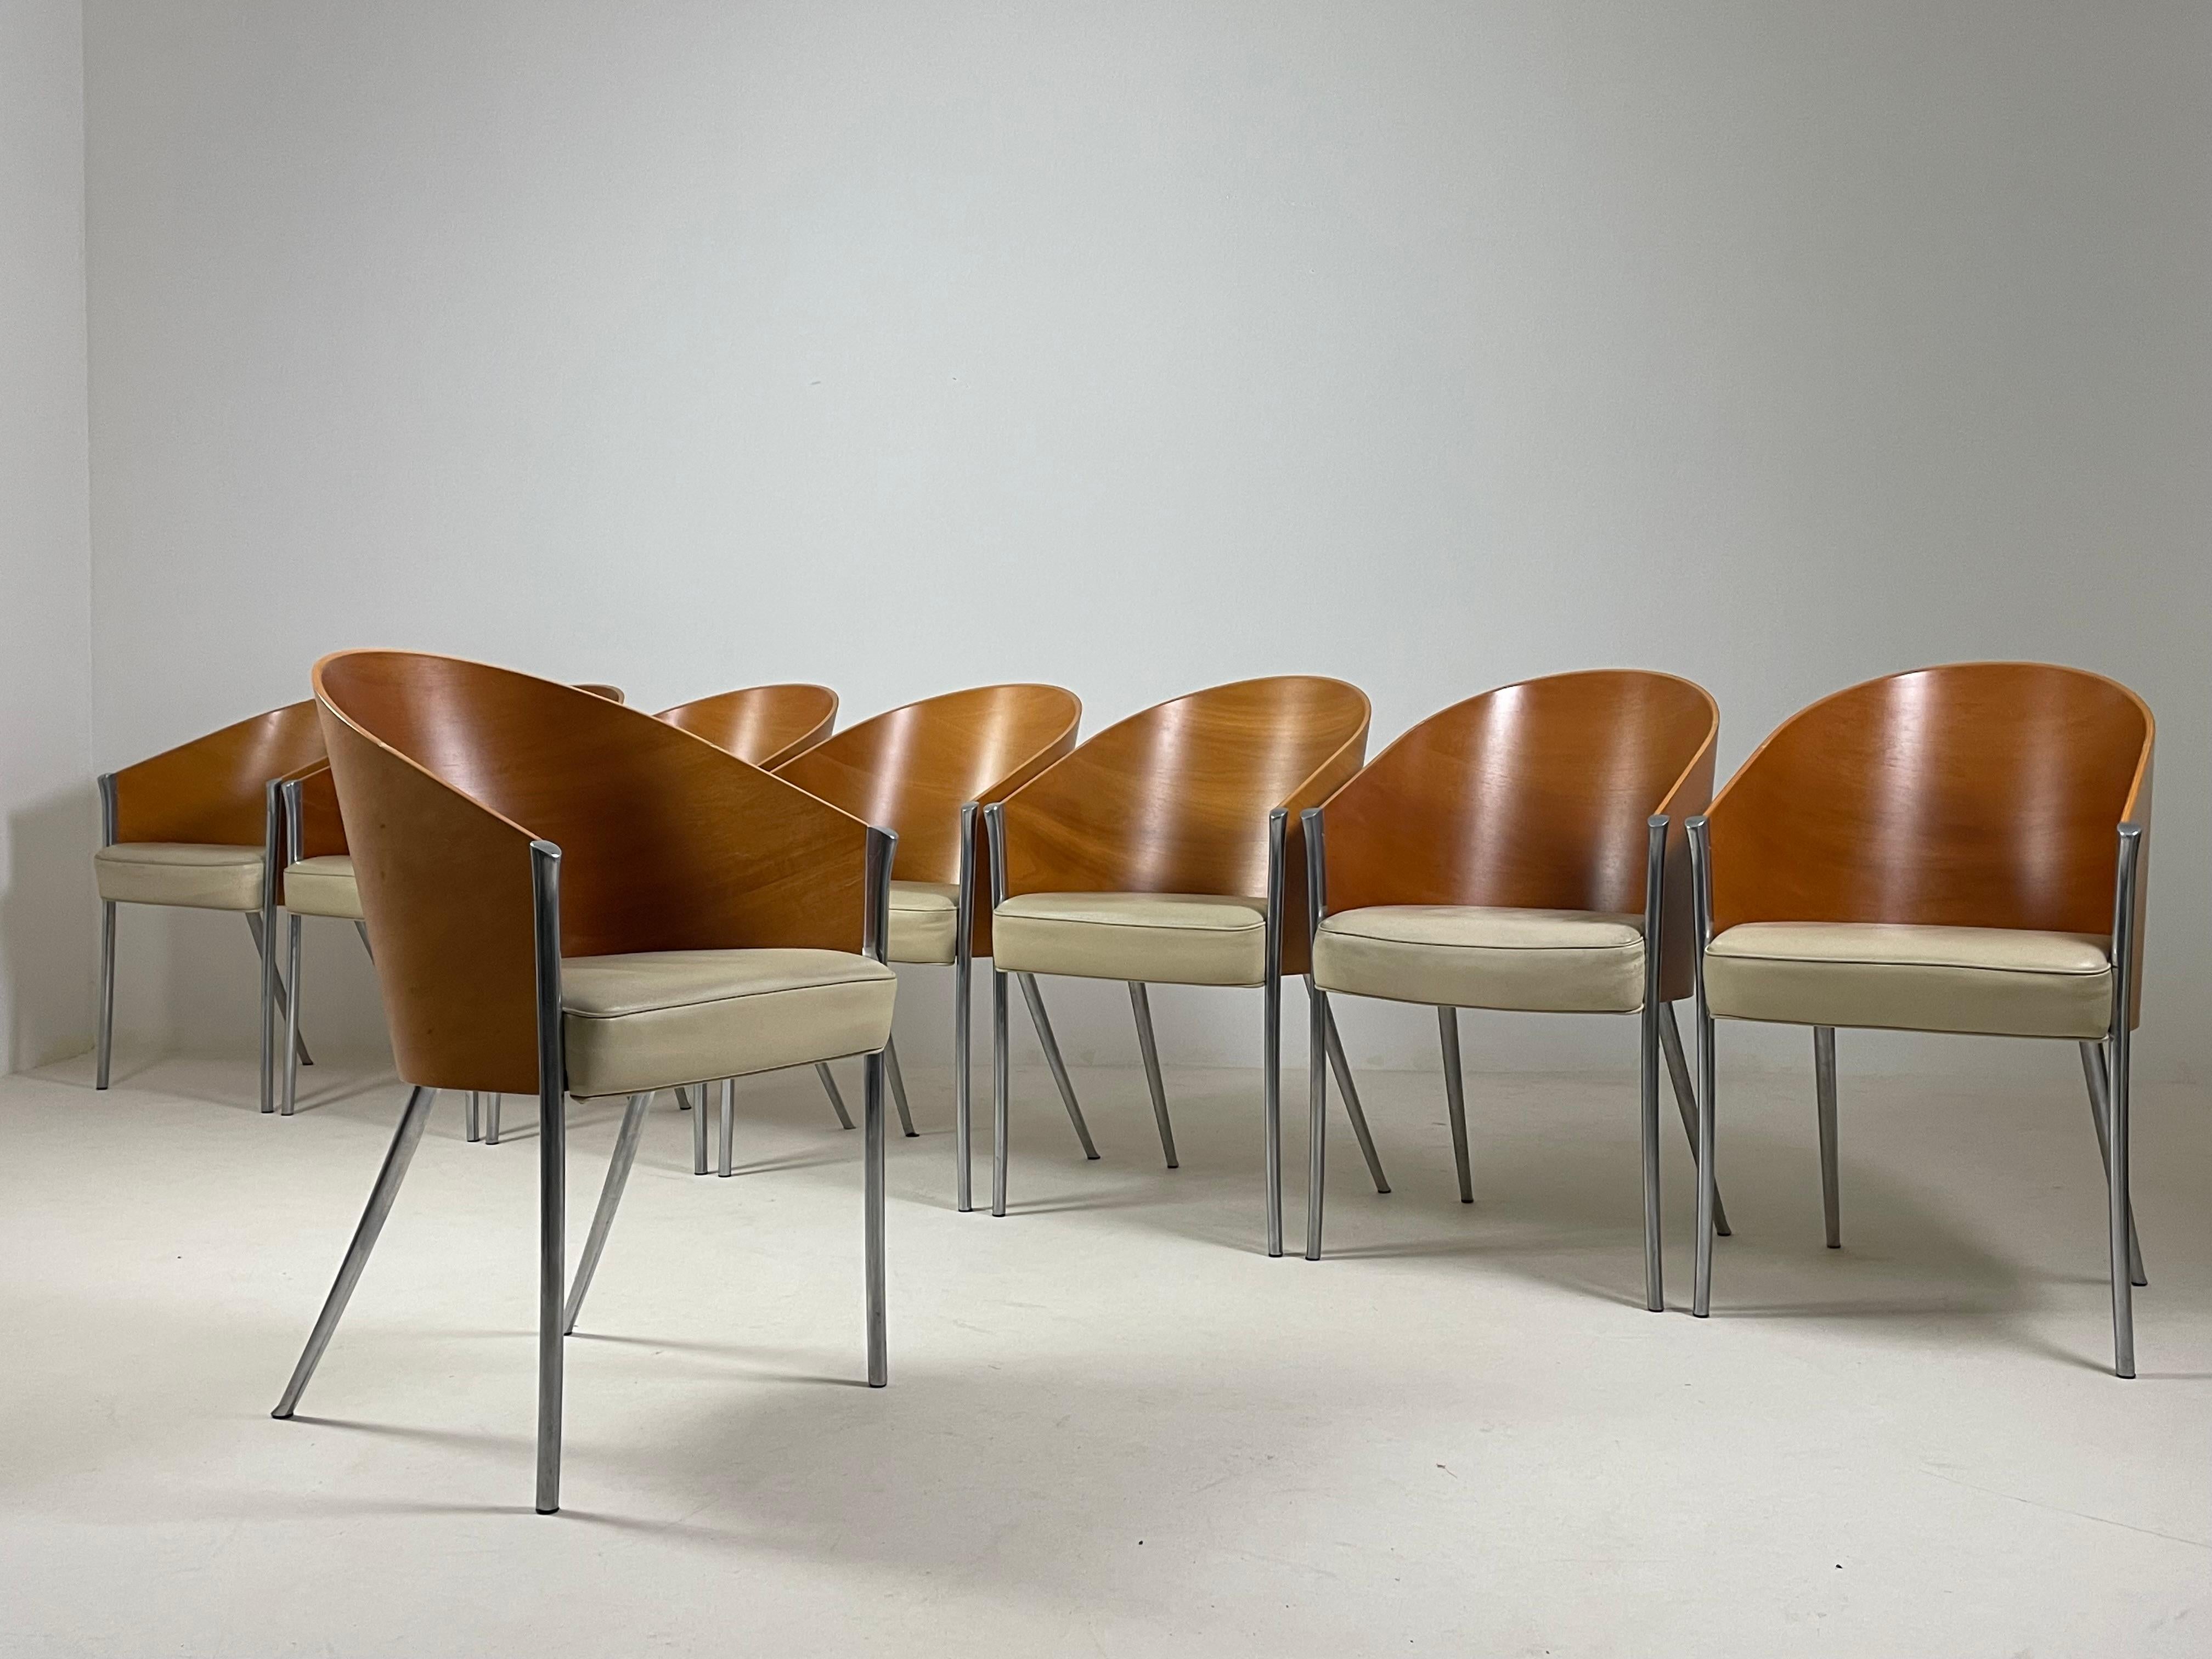 Satz von 8 King Costes Model Sesseln des Designers Philippe Starck, hergestellt von Aleph/driade in den 1990er Jahren. Sockel aus poliertem Aluminiumguss. Sitz aus Bultex-Schaumstoff, bezogen mit elfenbeinfarbenem Rindsleder. Rückseite aus Formholz